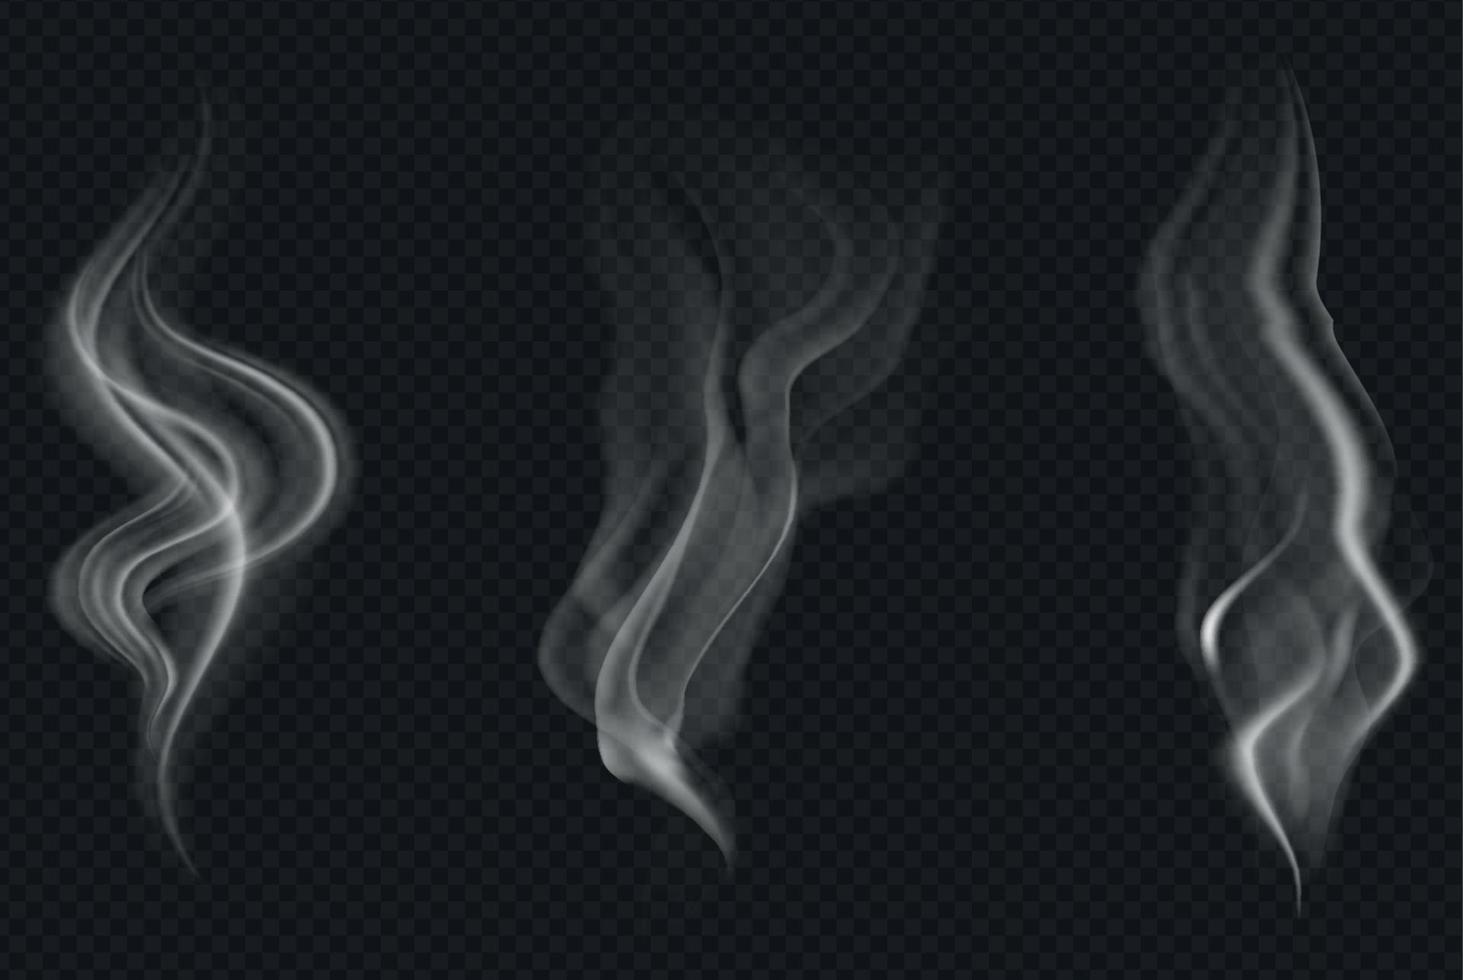 ensemble de fumée ou de vapeur transparente réaliste dans des couleurs blanches et grises, à utiliser sur fond sombre. transparence uniquement en format vectoriel